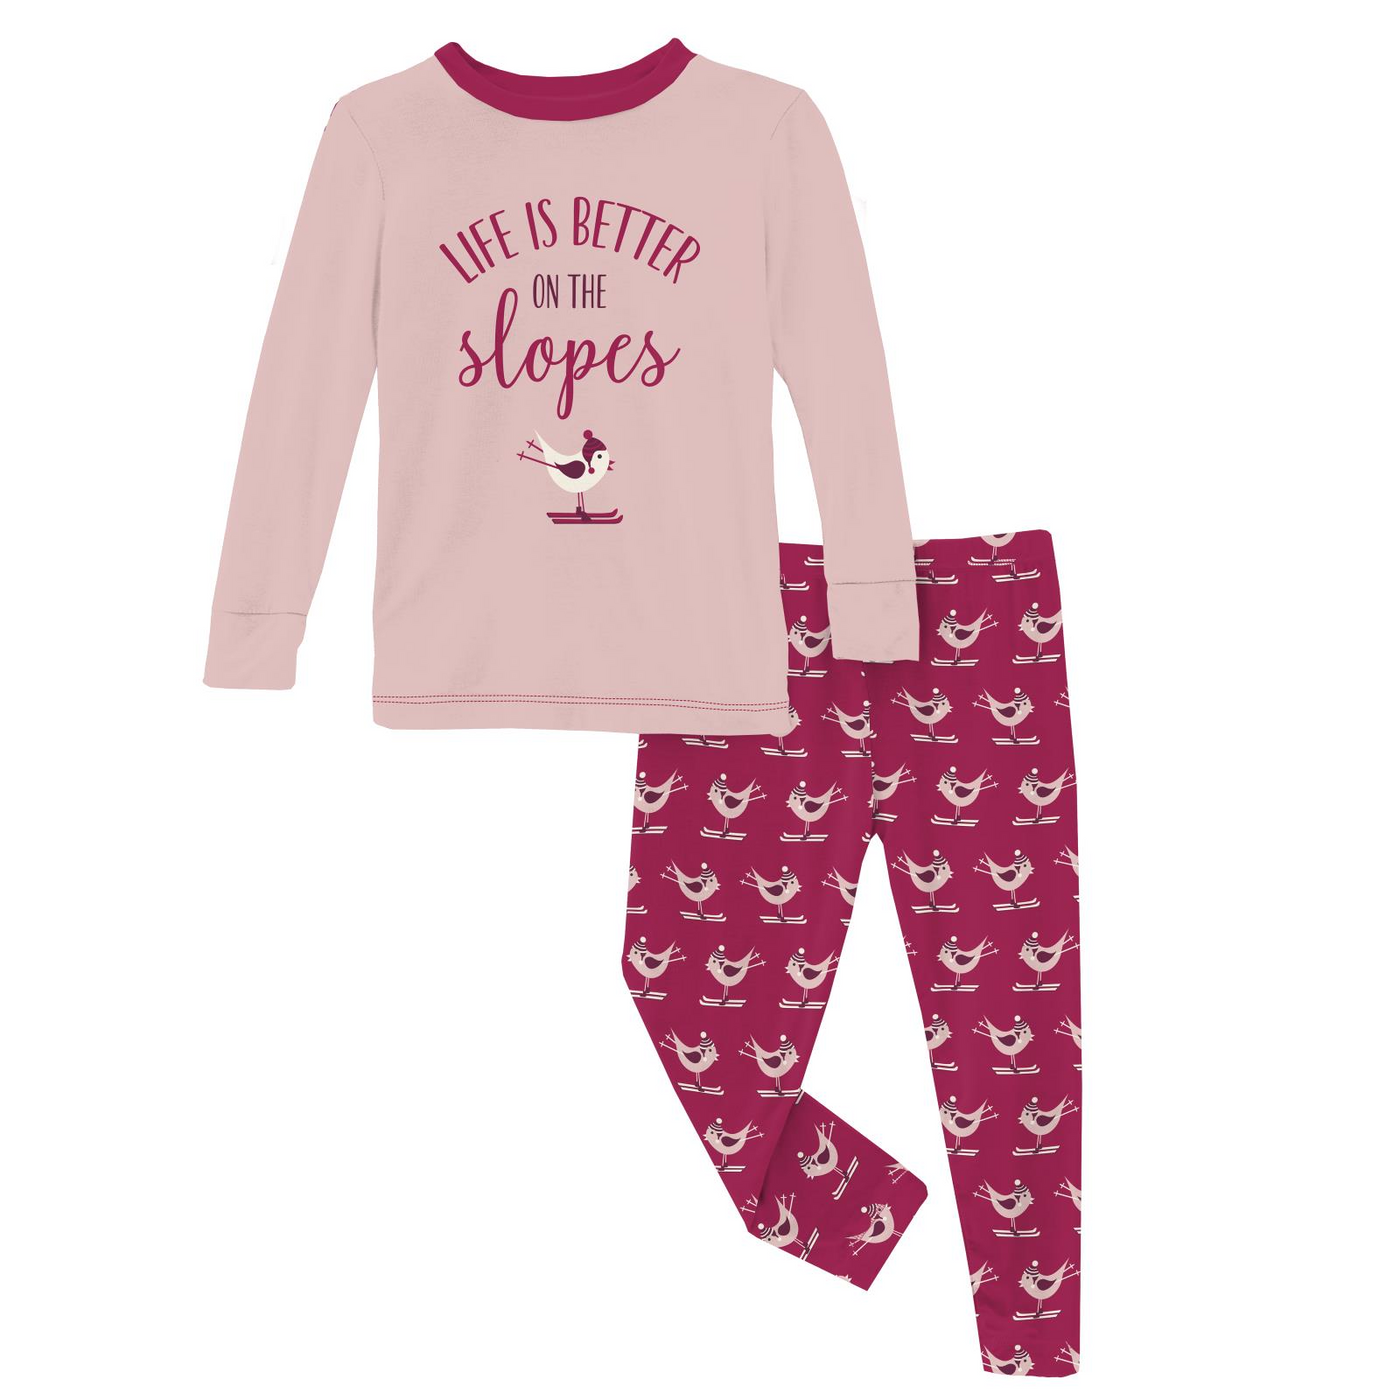 Kickee Pants Graphic Tee Pajama Set: Berry Ski Birds